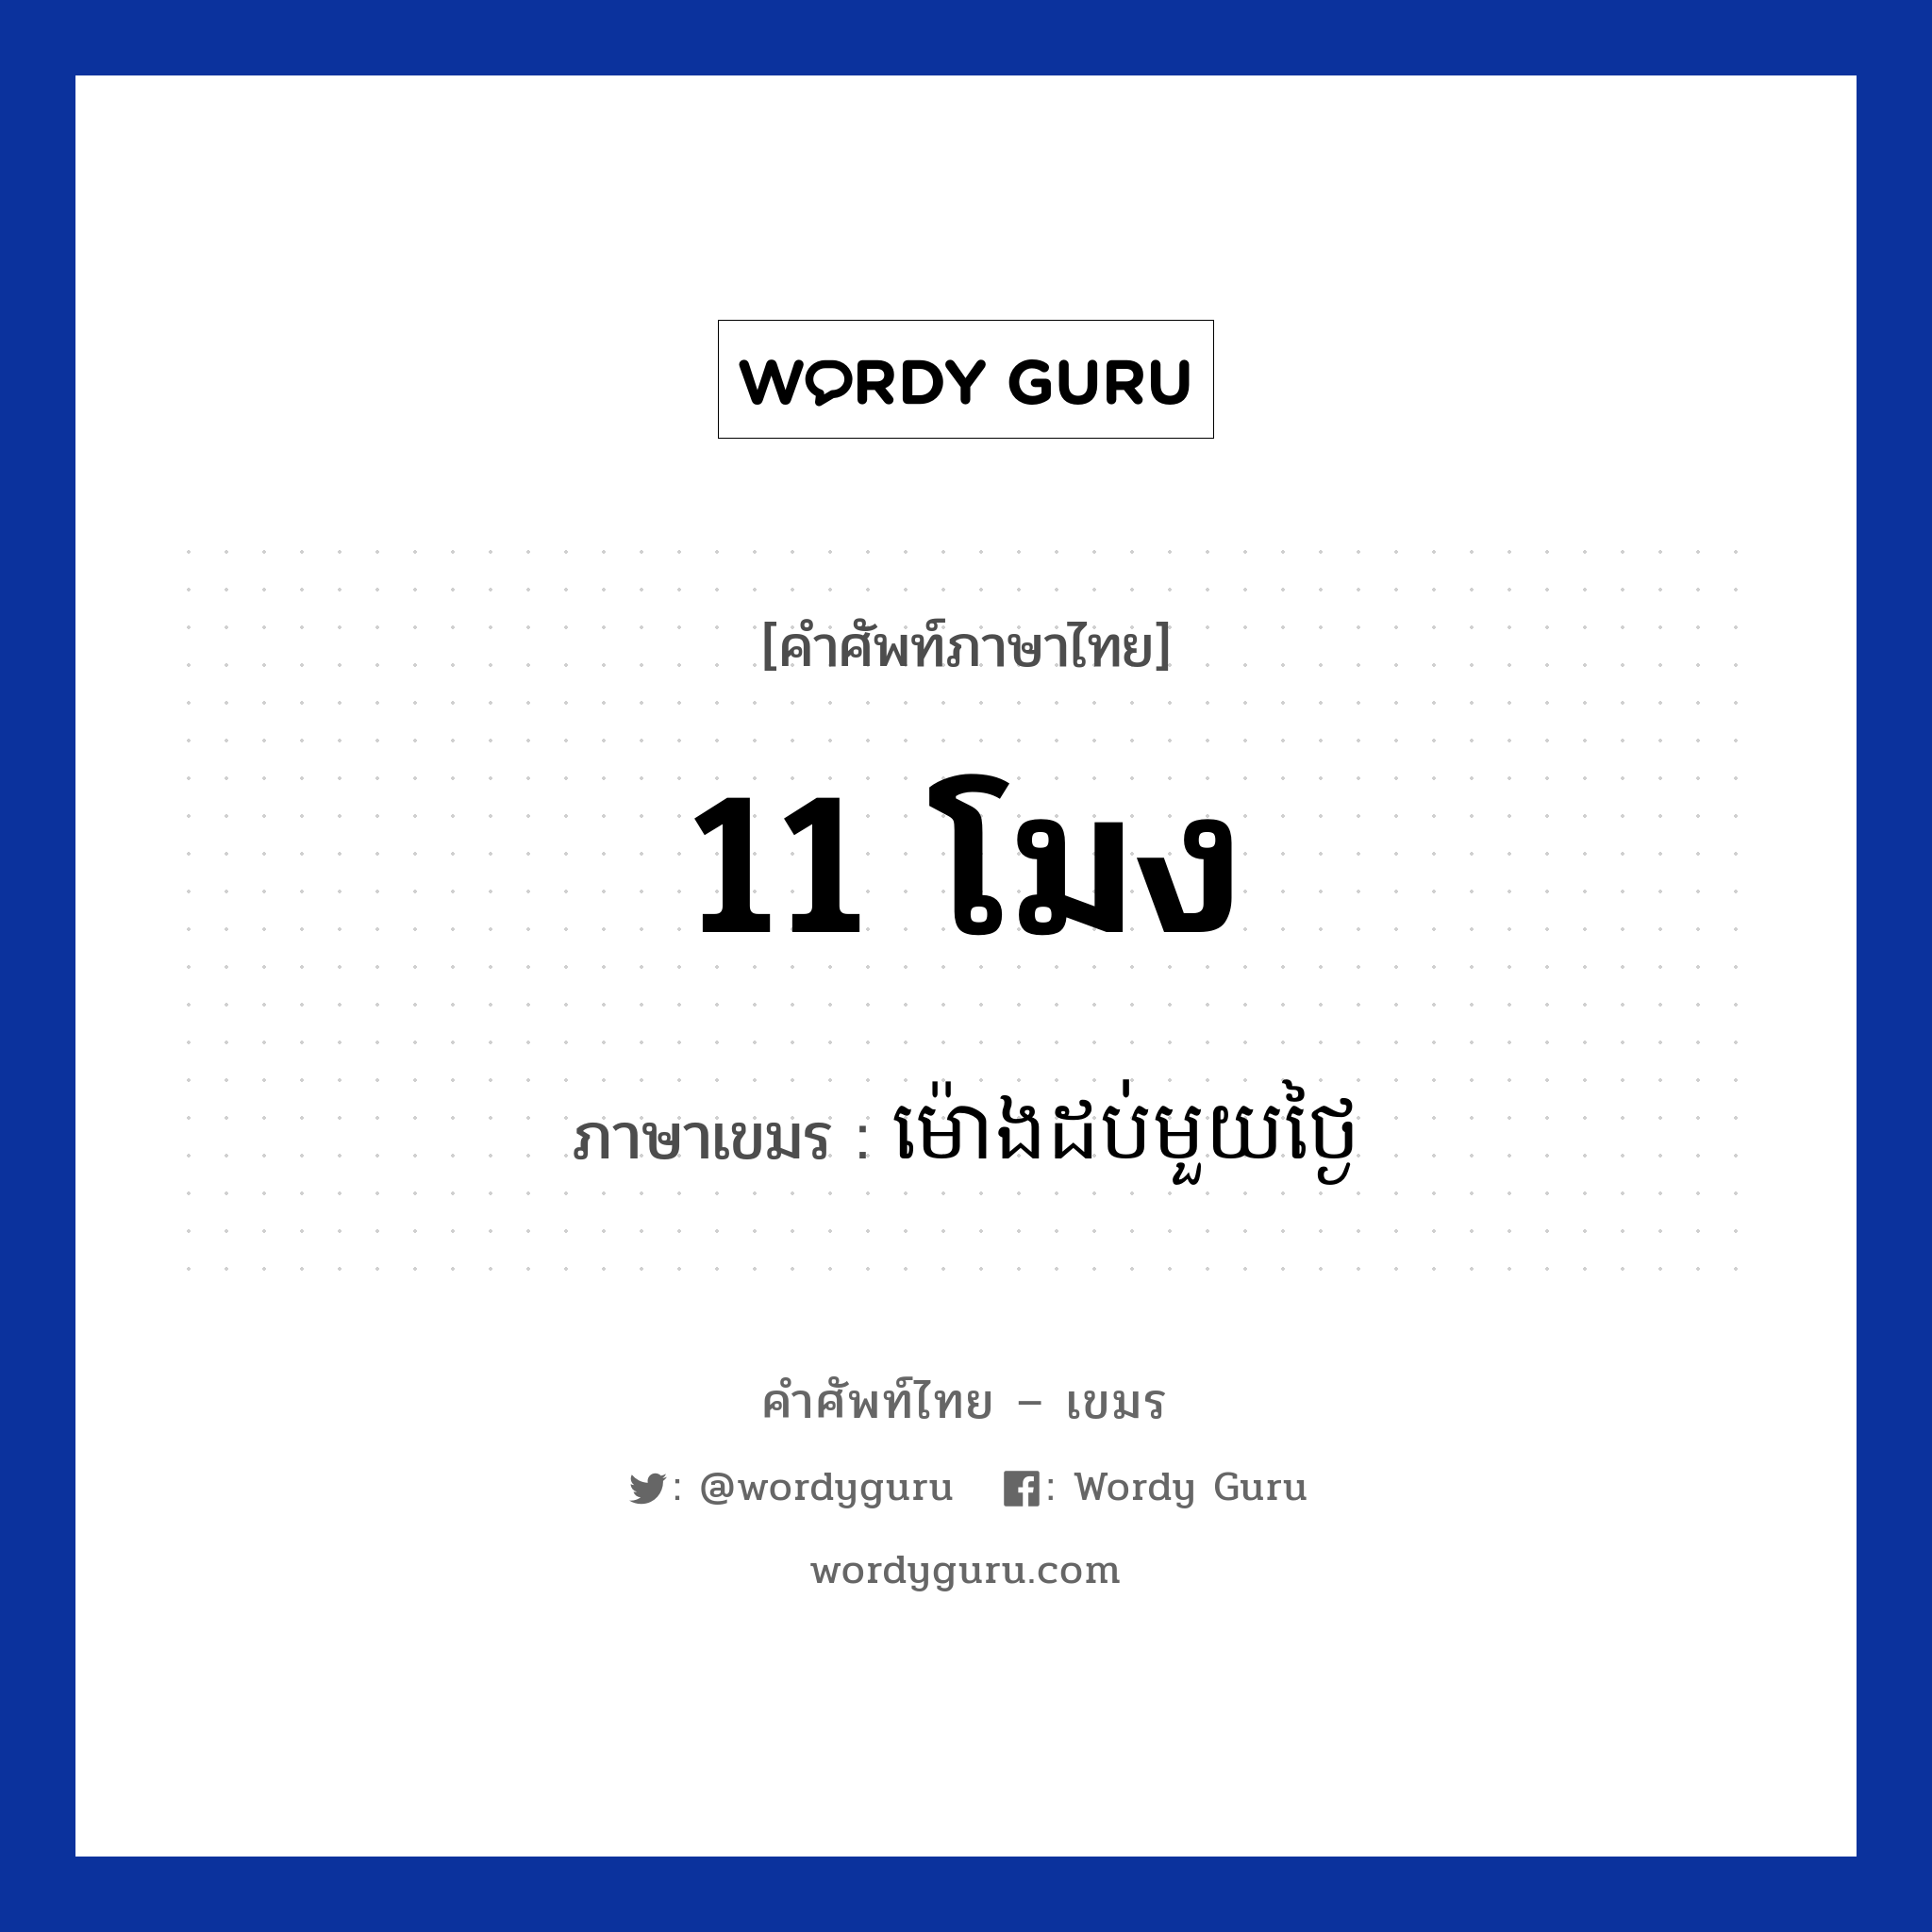 ម៉ោងដប់មួយថ្ងៃ ภาษาไทย?, คำศัพท์ภาษาไทย - เขมร ម៉ោងដប់មួយថ្ងៃ ภาษาเขมร 11 โมง หมวด เวลา Mong dobmouy tngai หมวด เวลา